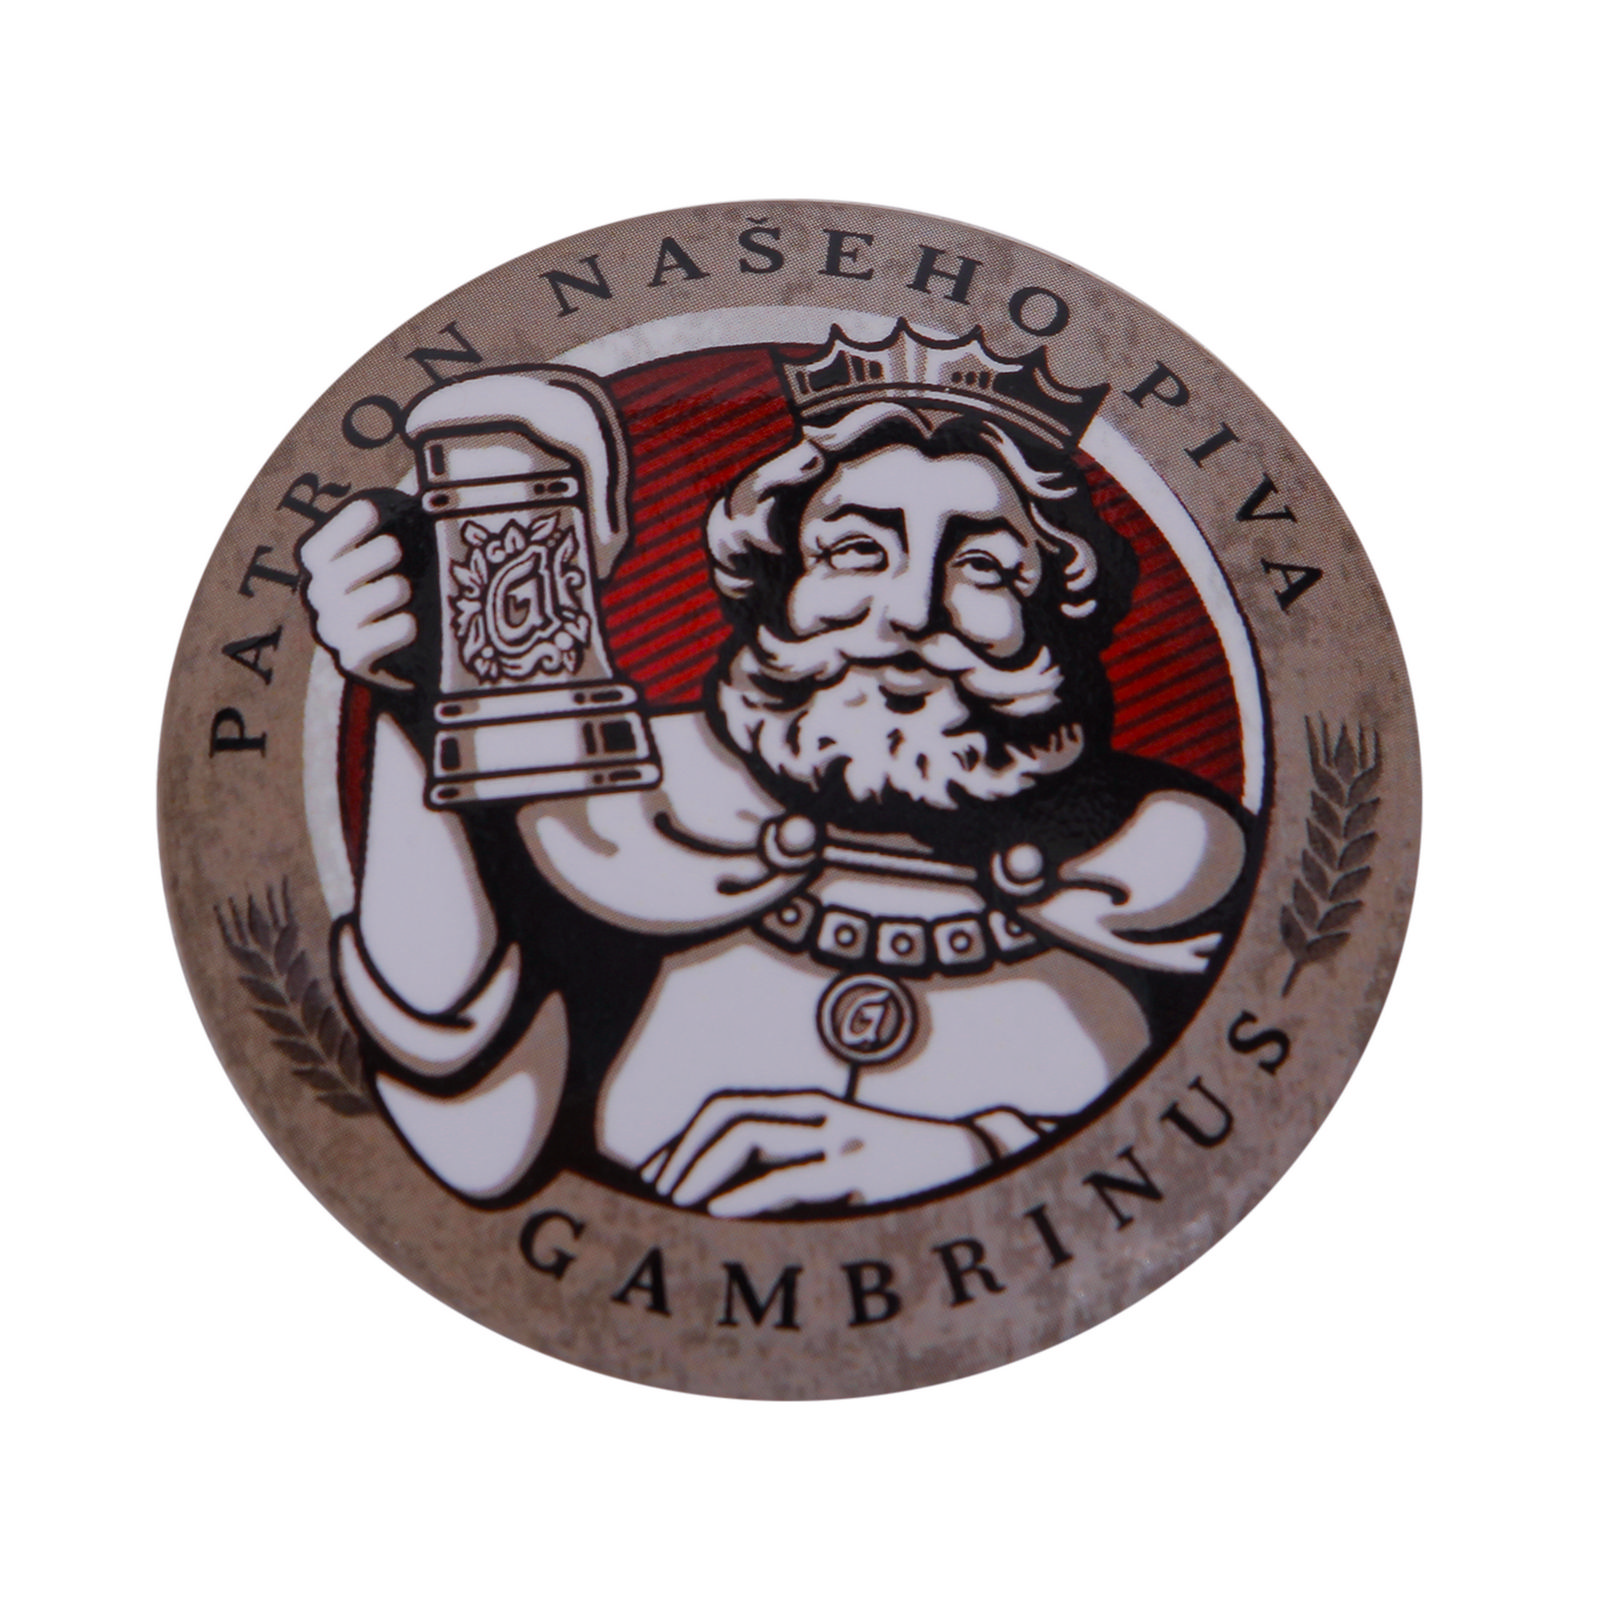 Gambrinus Badge